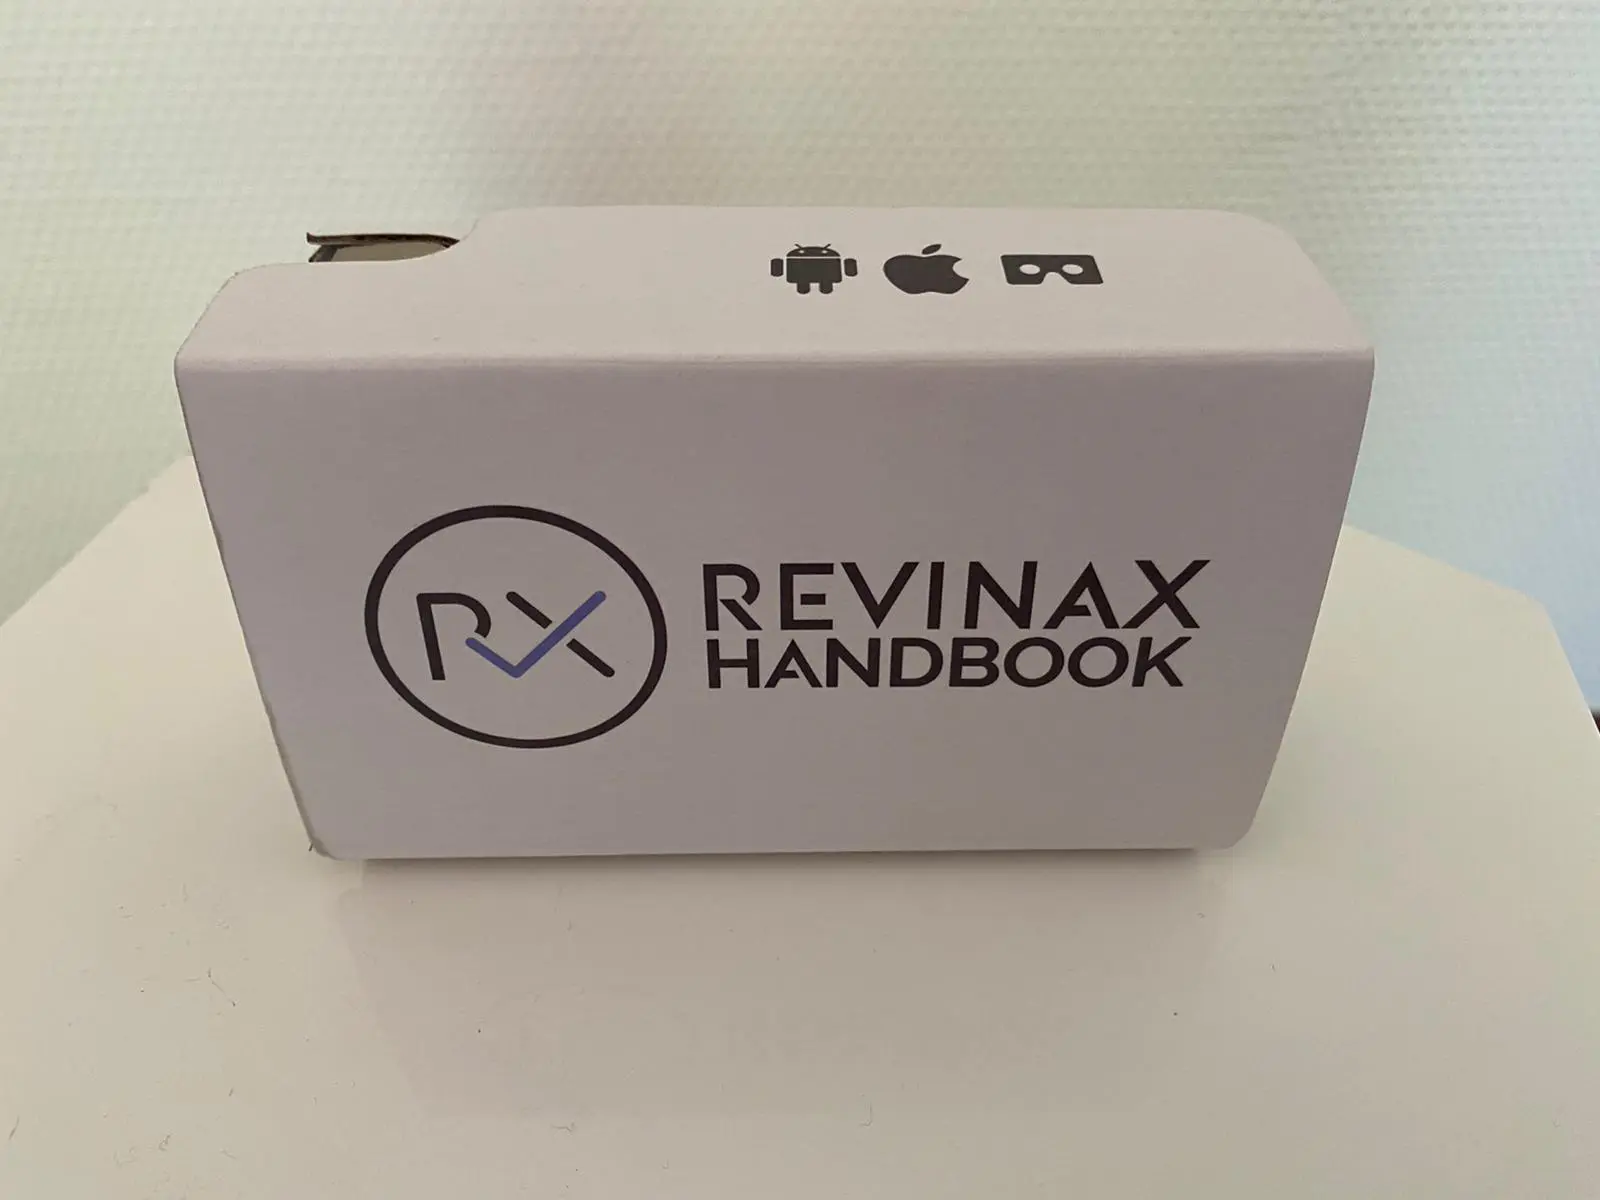 Une fois monté, le cardboard Revinax devient un casque VR